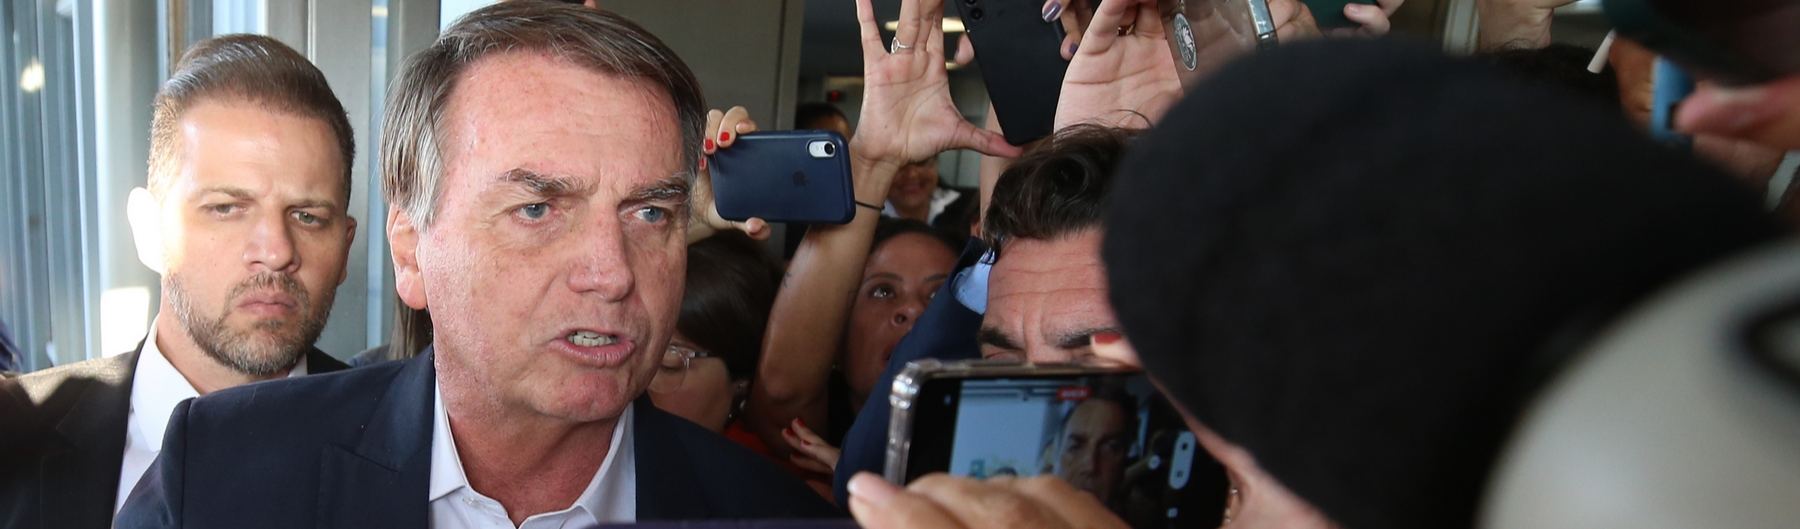 Abuso de poder político: entenda acusação que pode tornar Bolsonaro inelegível